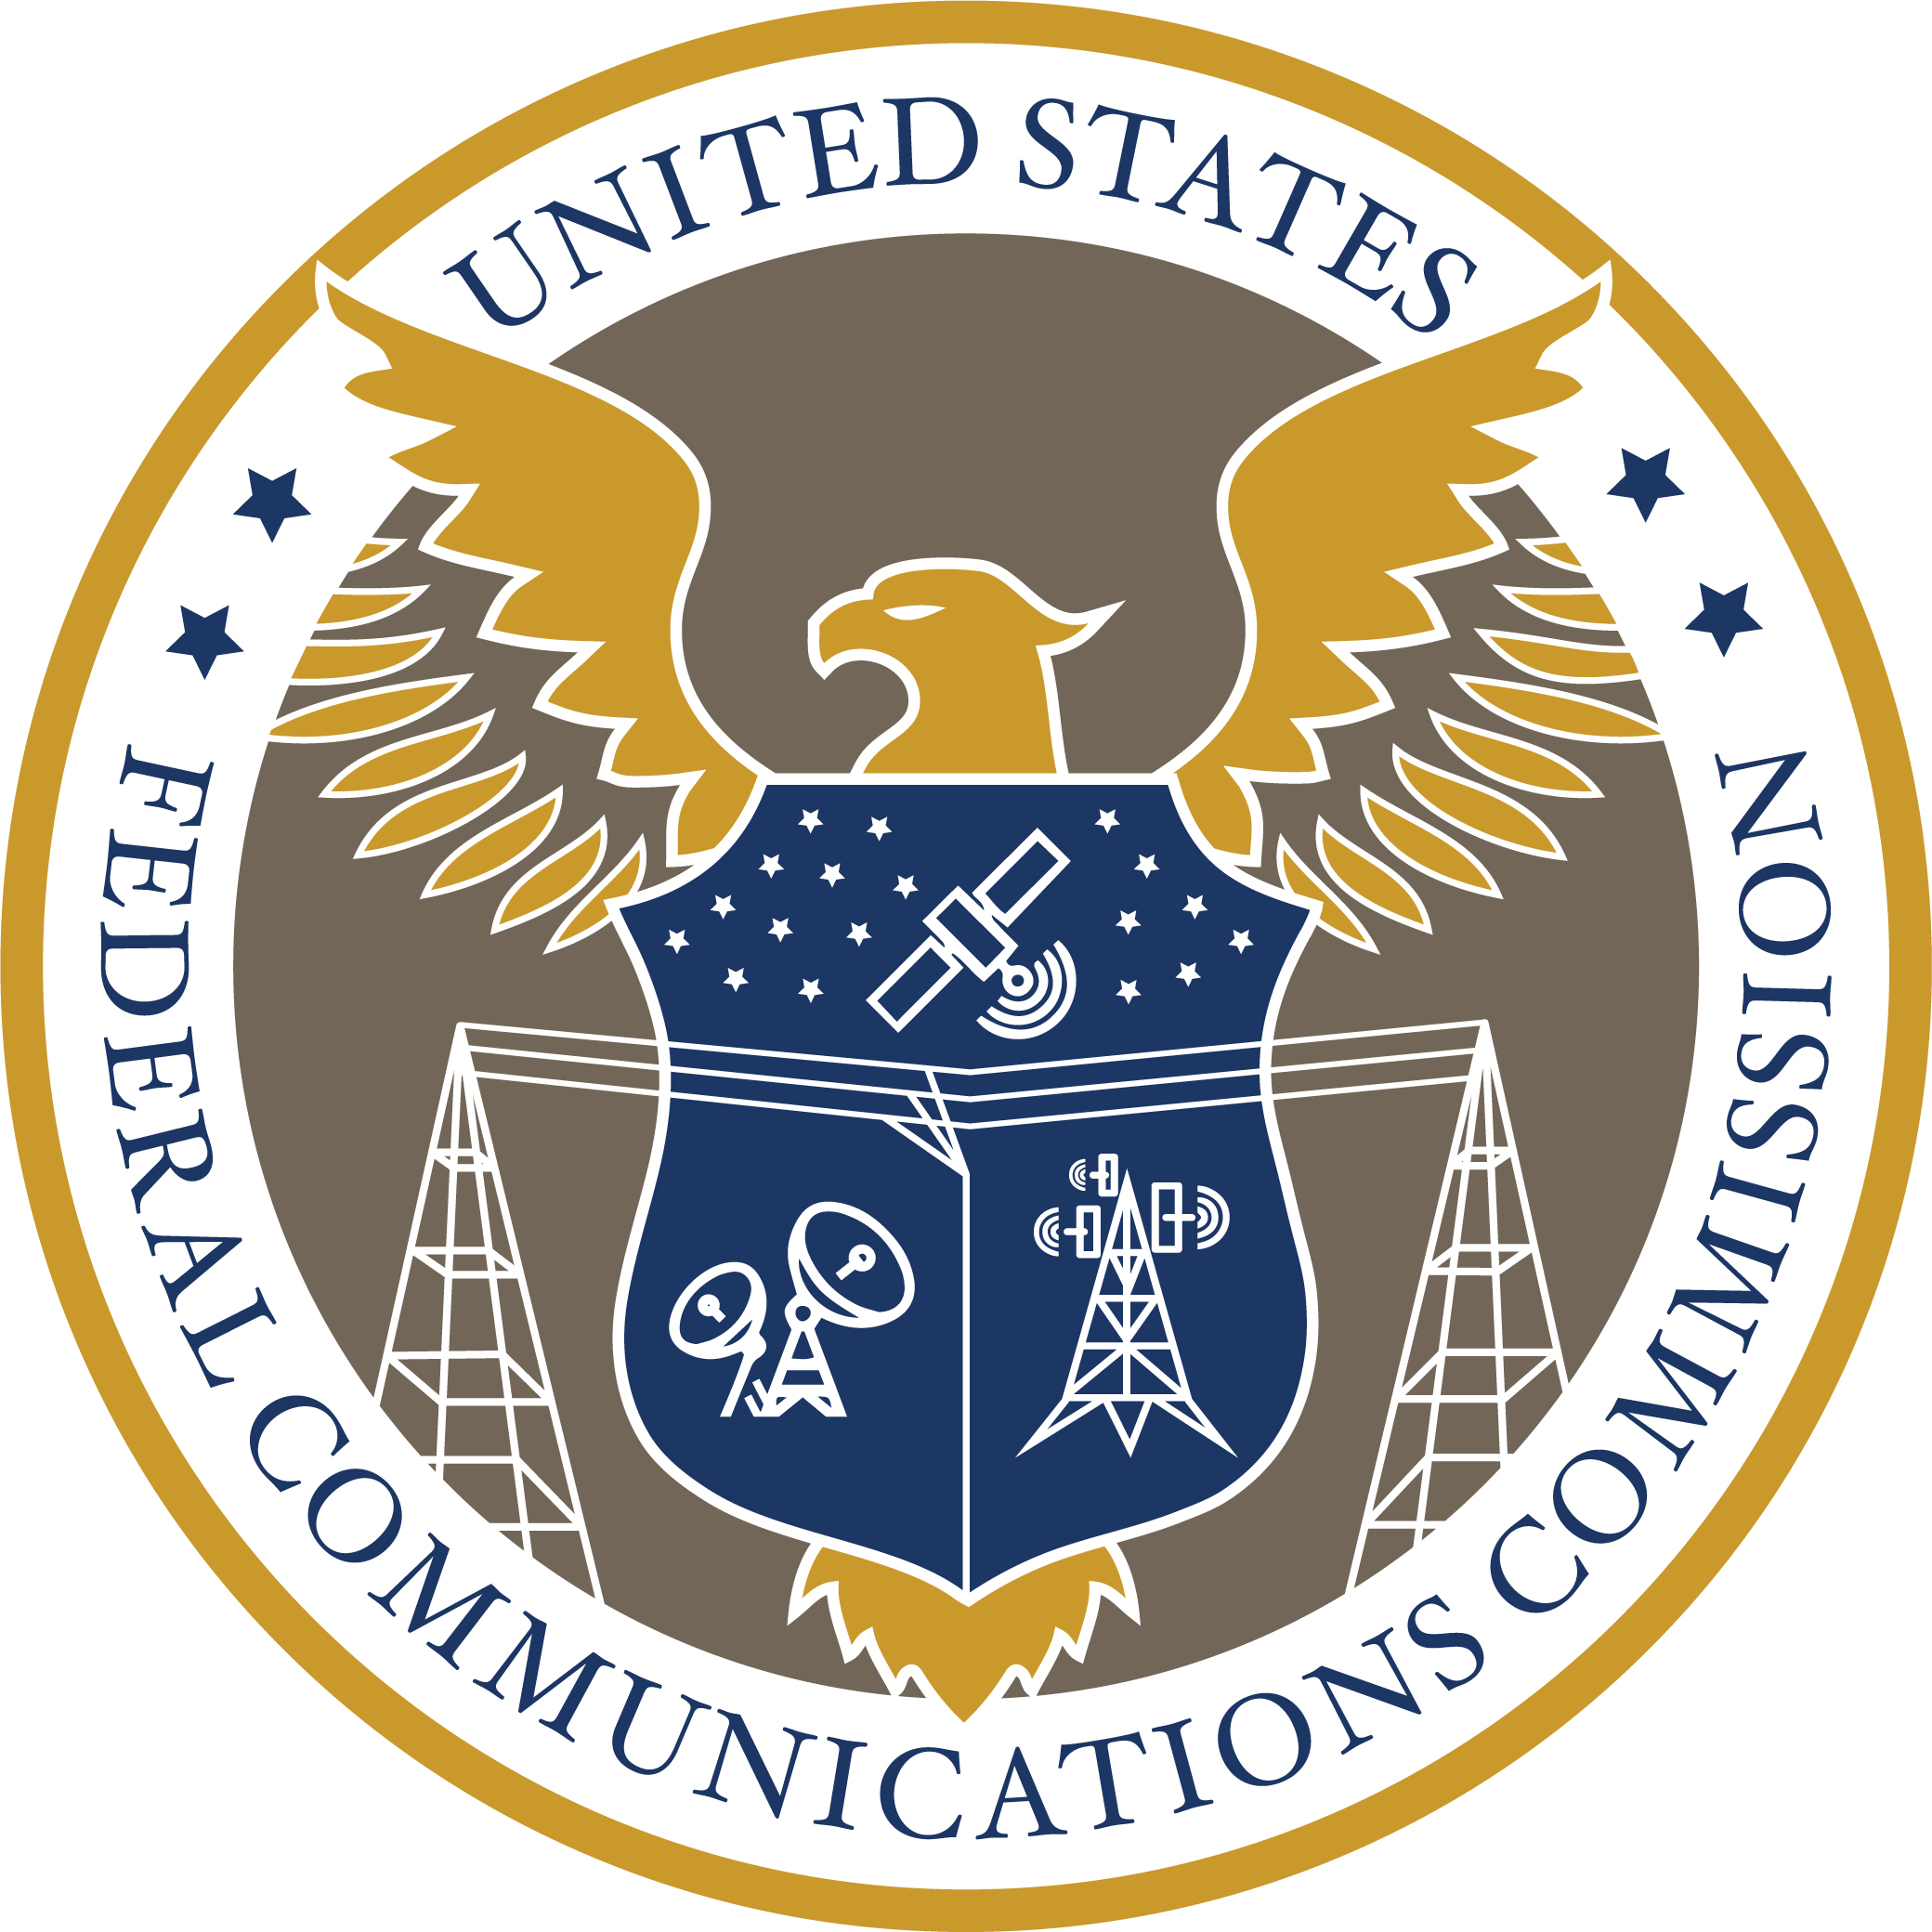 Comisi贸n Federal de Comunicaciones